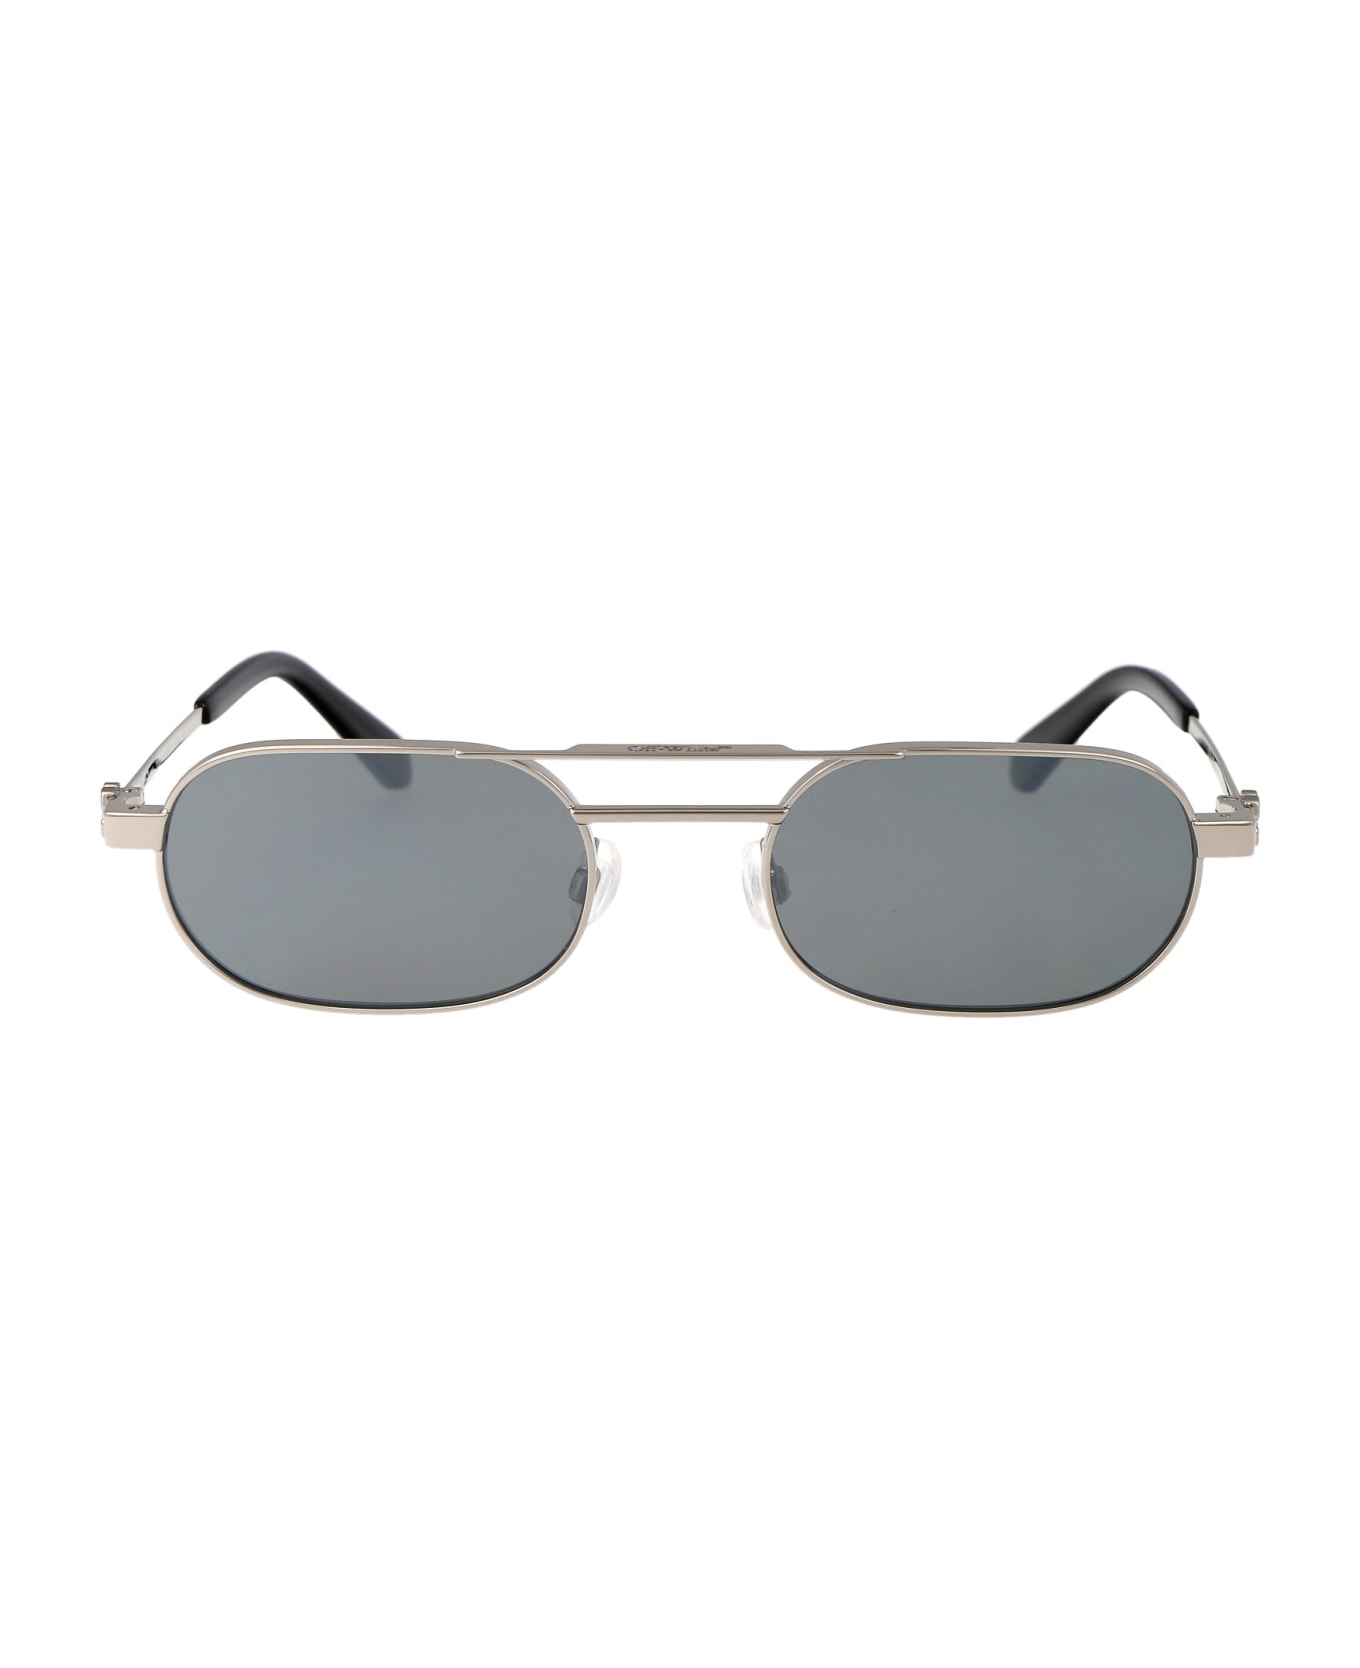 Off-White Vaiden Sunglasses - 7272 SILVER SILVER